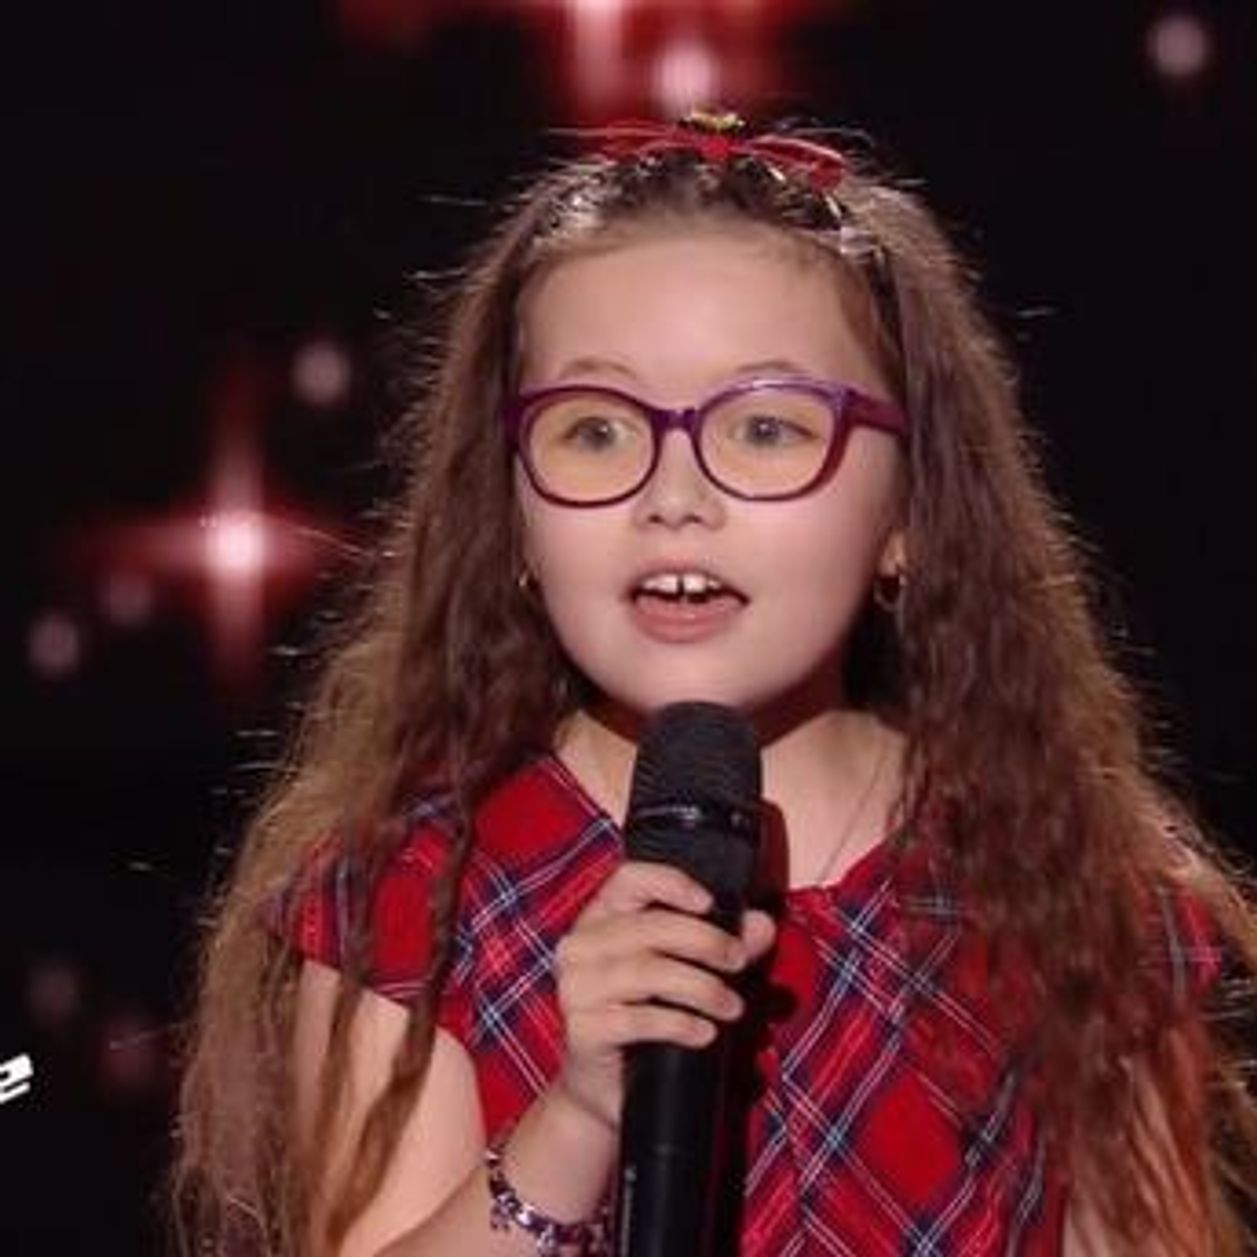 The Voice Kids 2018 : Emma évoque la maladie qui lui fait perdre la vue